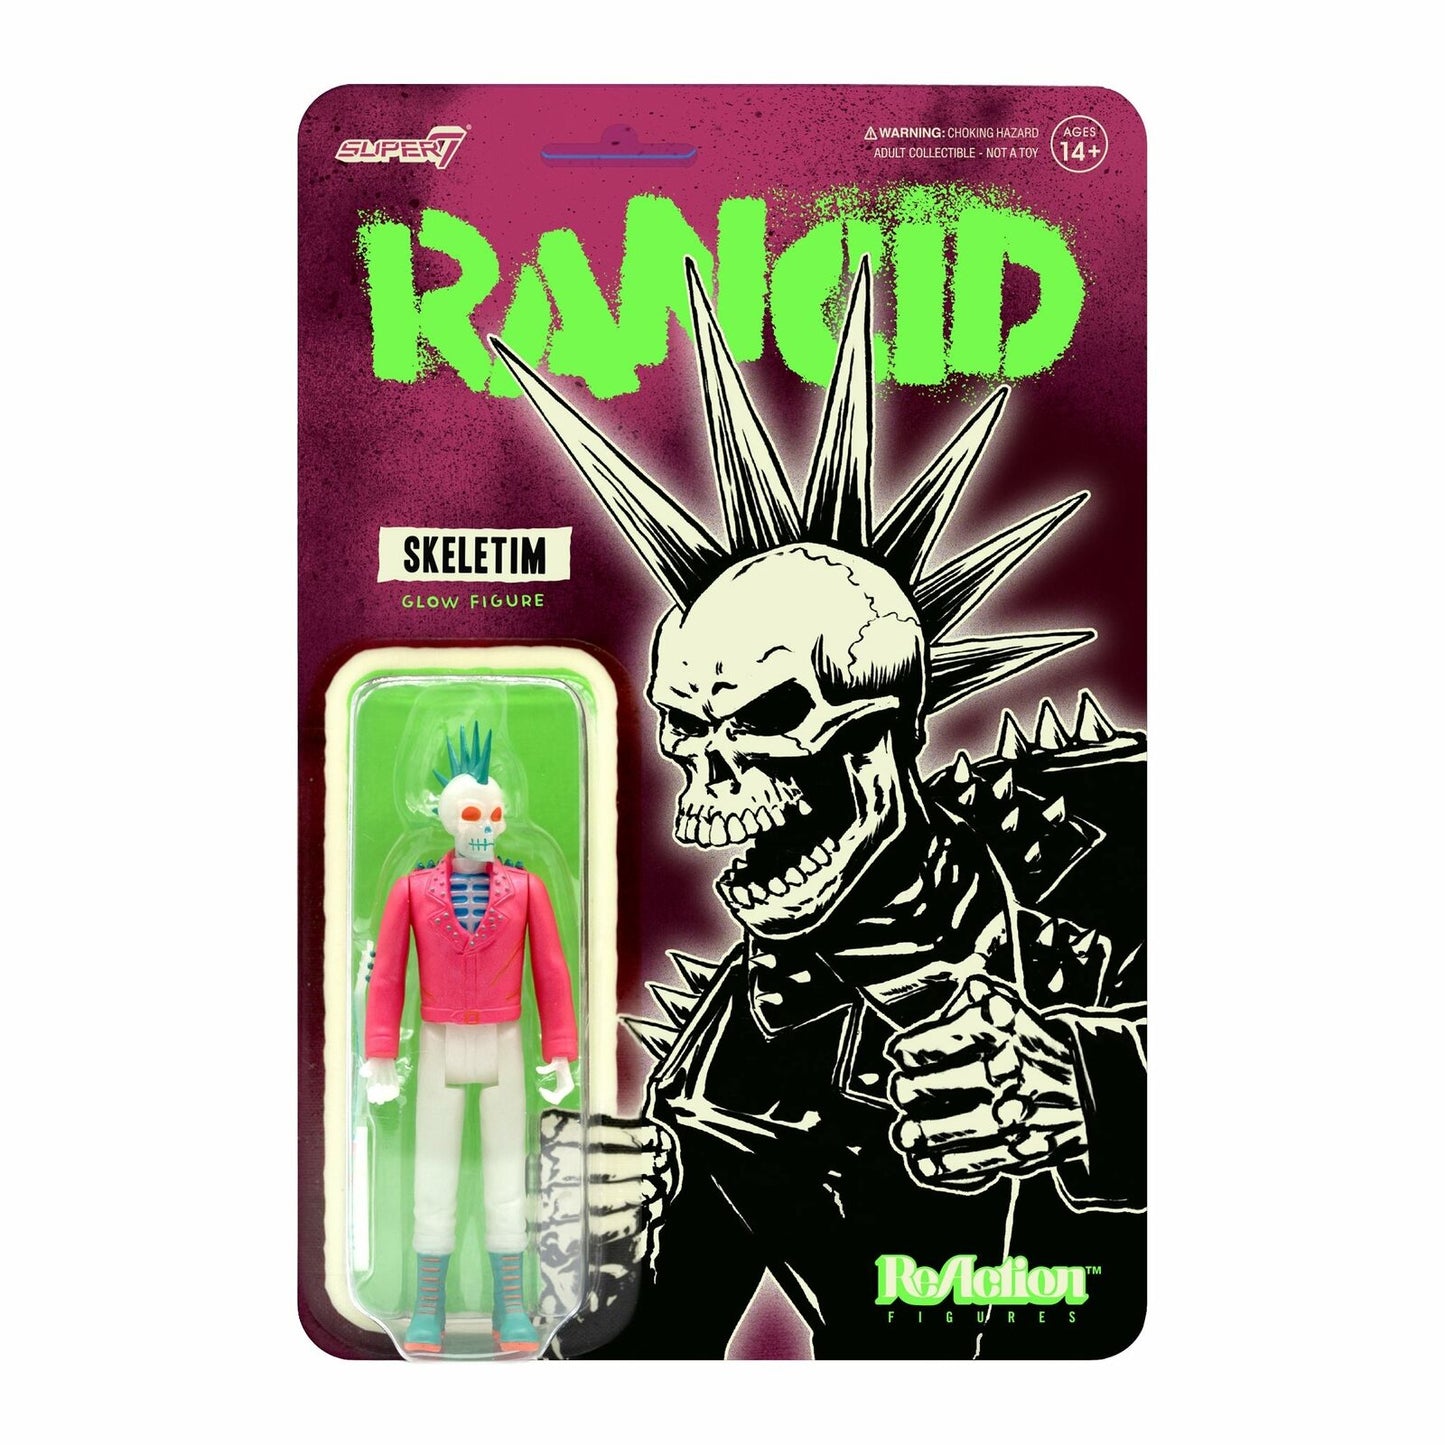 Rancid: Skeletim (Glow Figure) ReAction Figure [Toy]